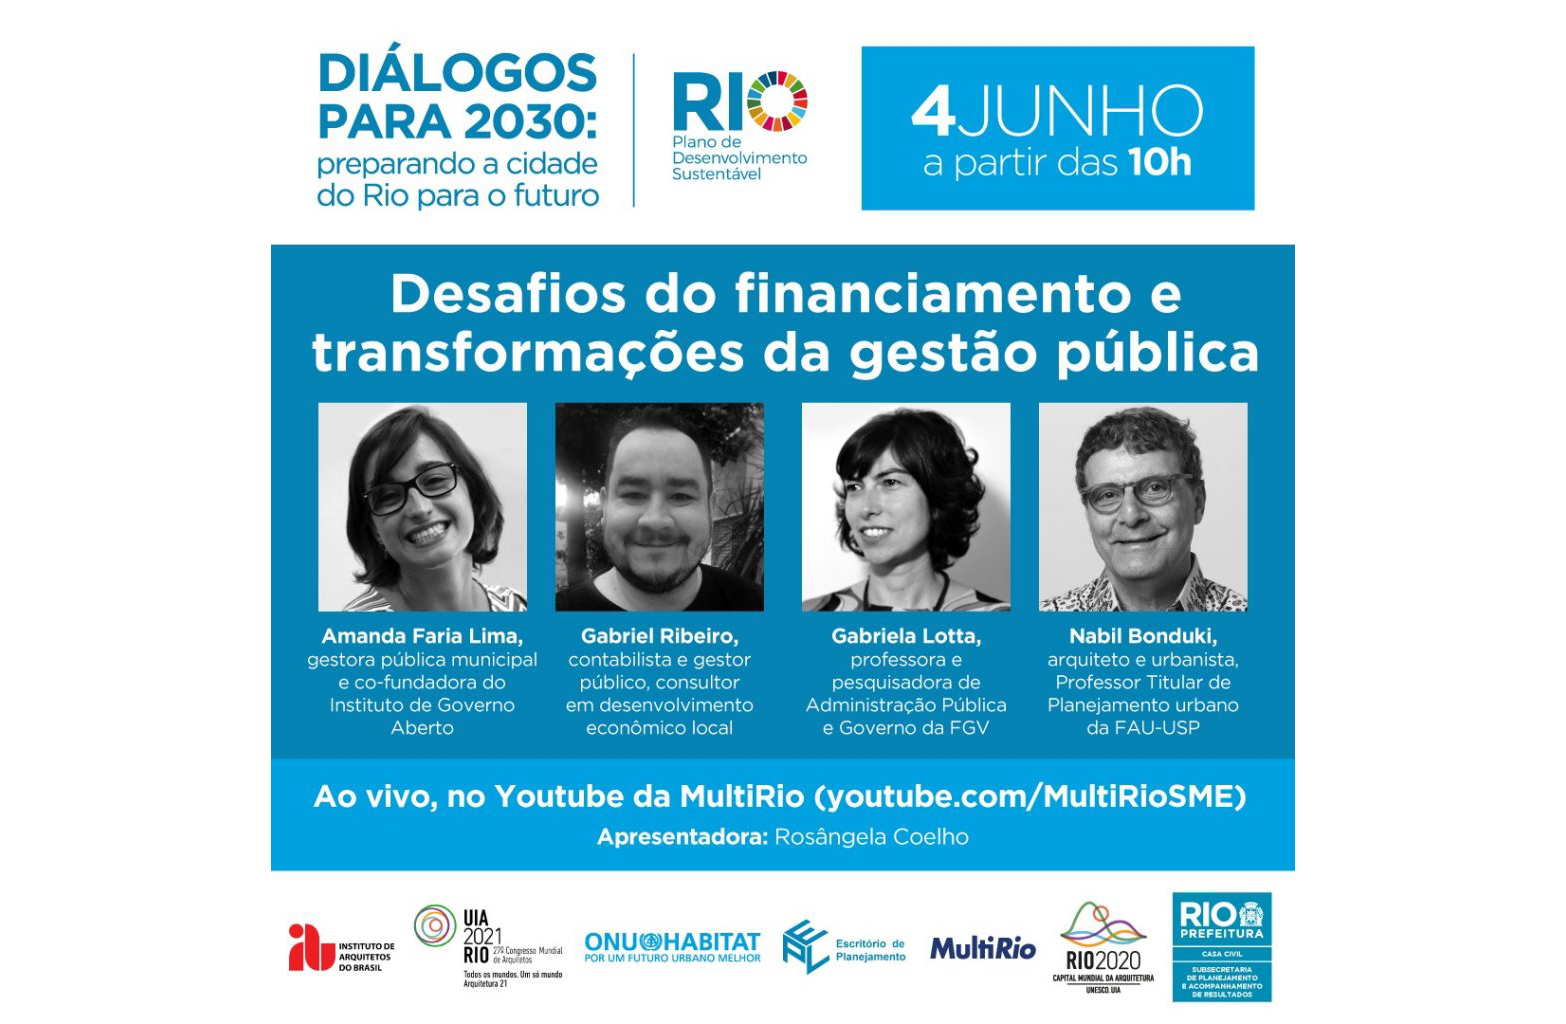 Debate com especialistas e população para o Plano de Desenvolvimento Sustentável do Rio